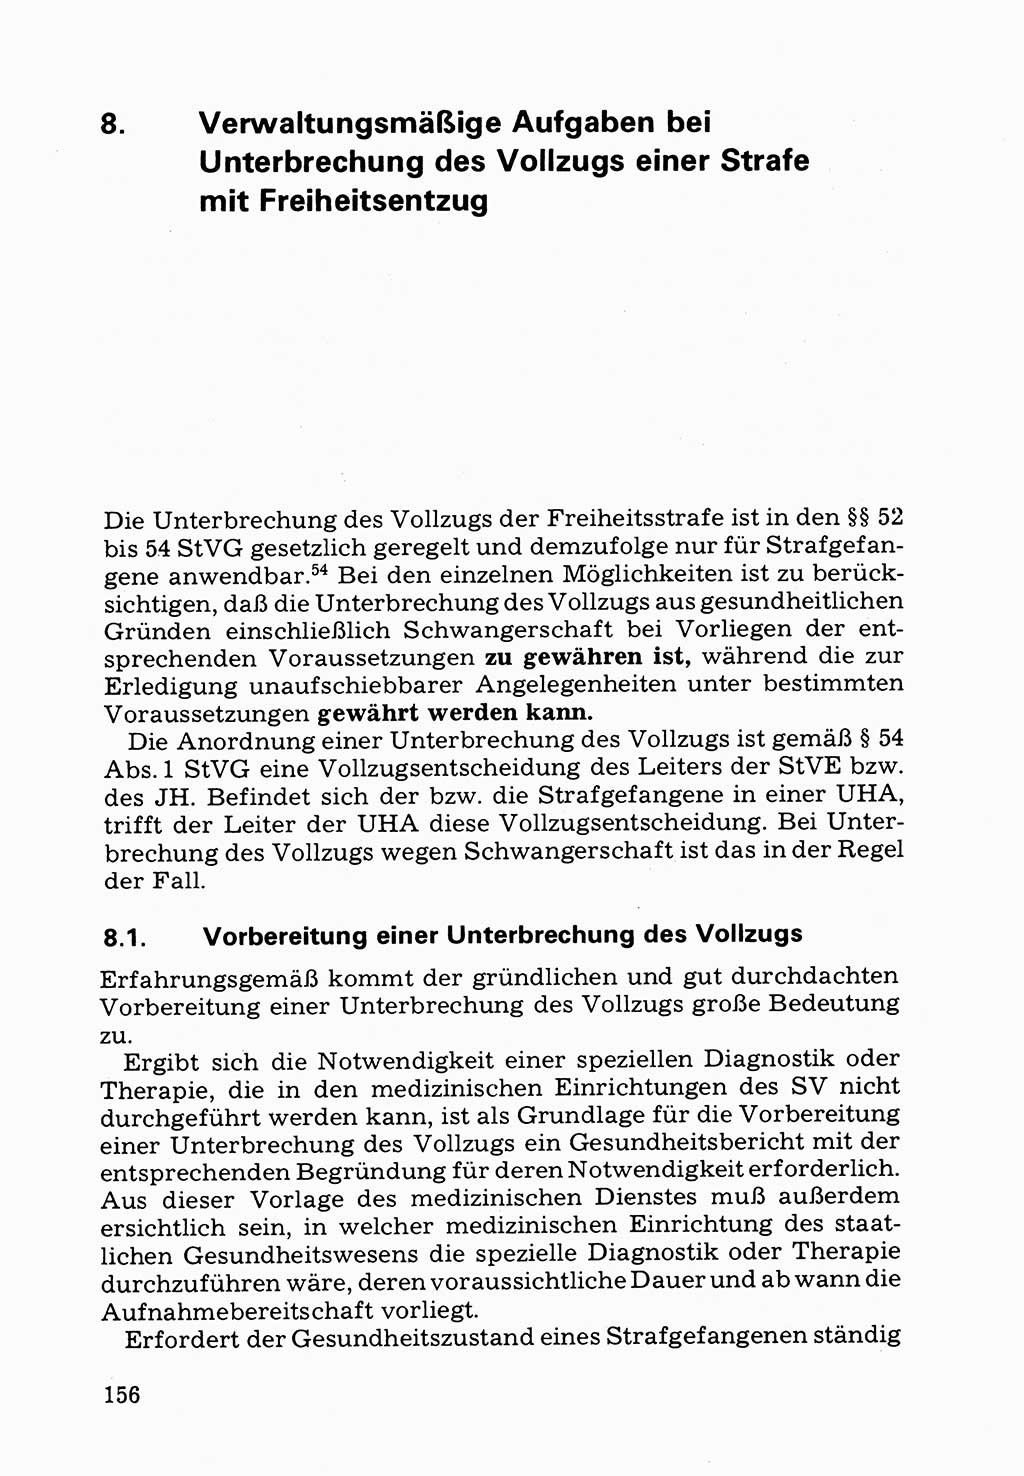 Verwaltungsmäßige Aufgaben beim Vollzug der Untersuchungshaft (U-Haft) sowie der Strafen mit Freiheitsentzug (SV) [Deutsche Demokratische Republik (DDR)] 1980, Seite 156 (Aufg. Vollz. U-Haft SV DDR 1980, S. 156)